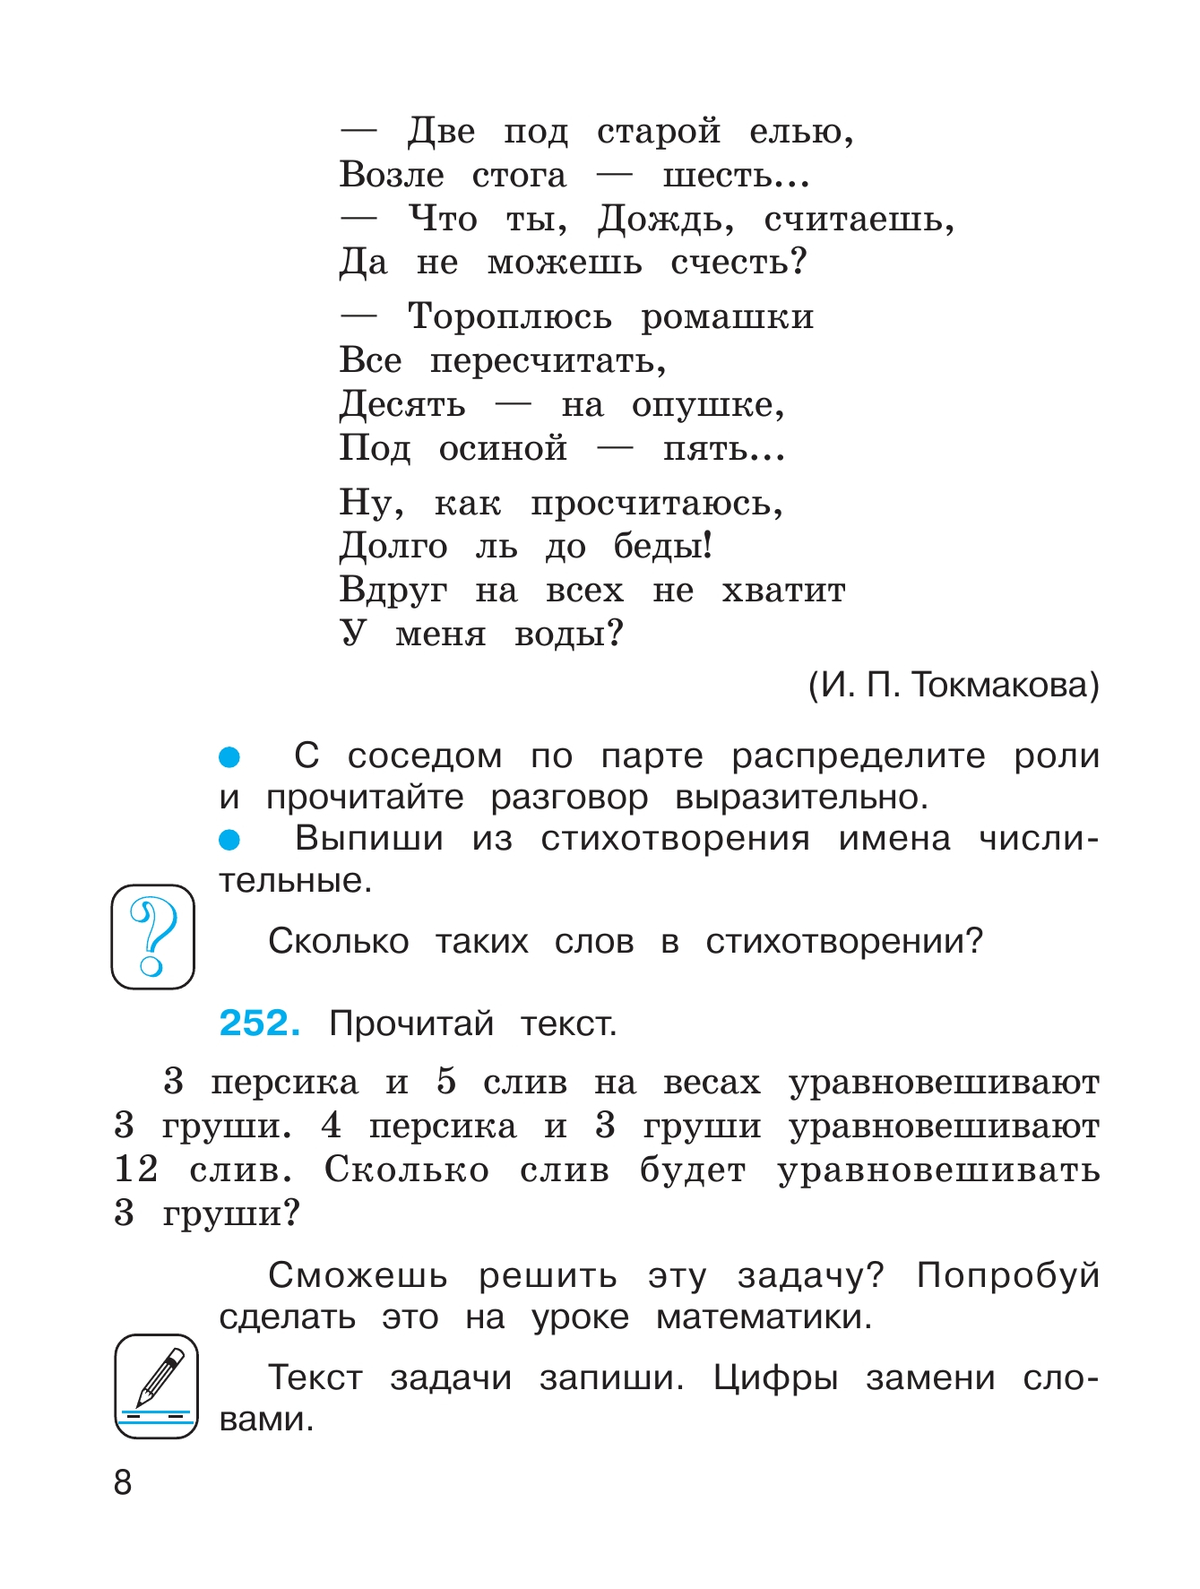 Русский язык. 4 класс. Учебник. В 2 ч. Часть 2 11